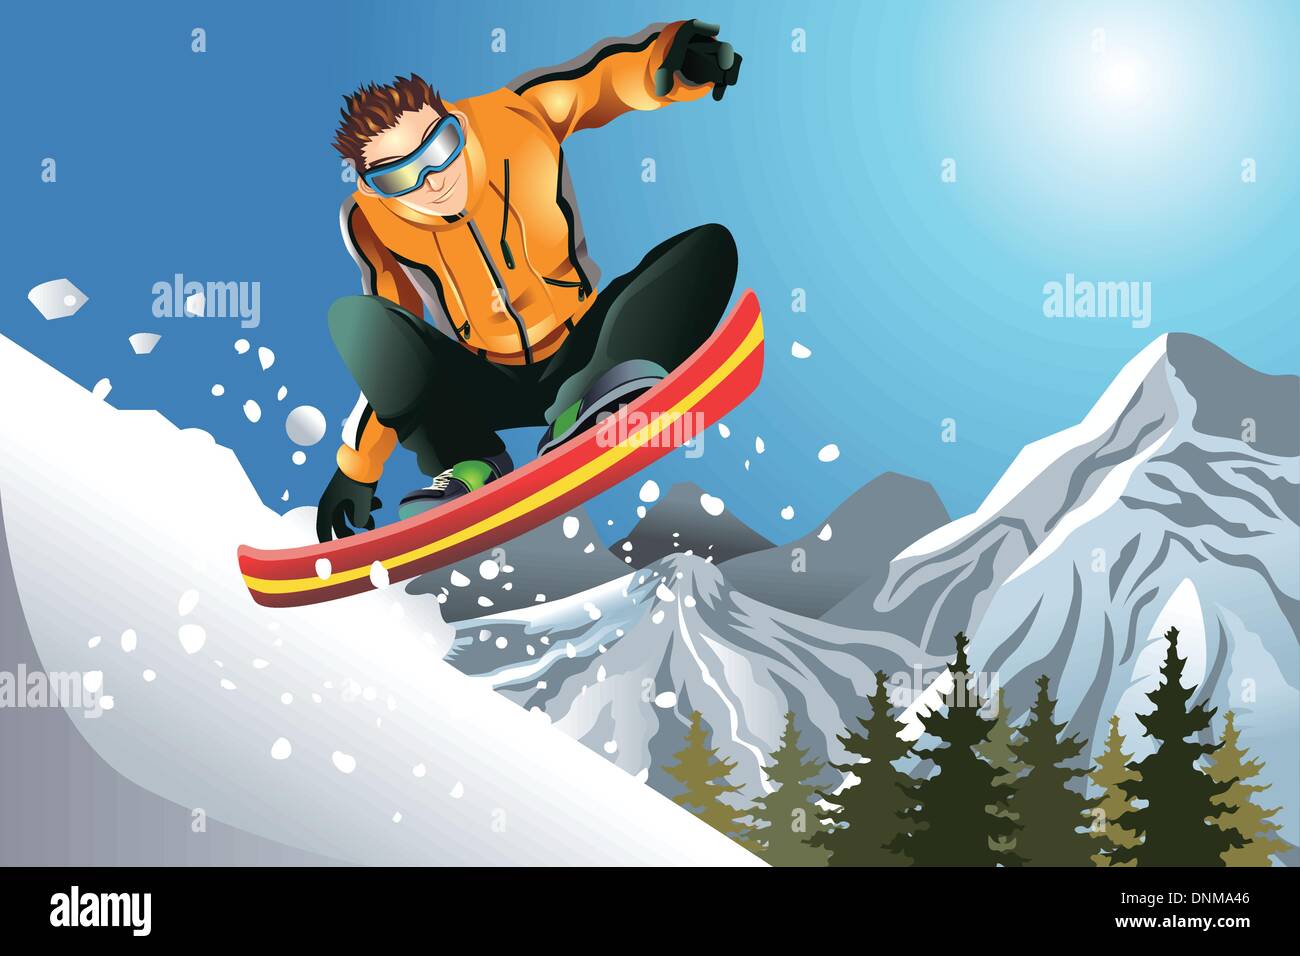 Una illustrazione vettoriale di uno snowboarder in azione Illustrazione Vettoriale